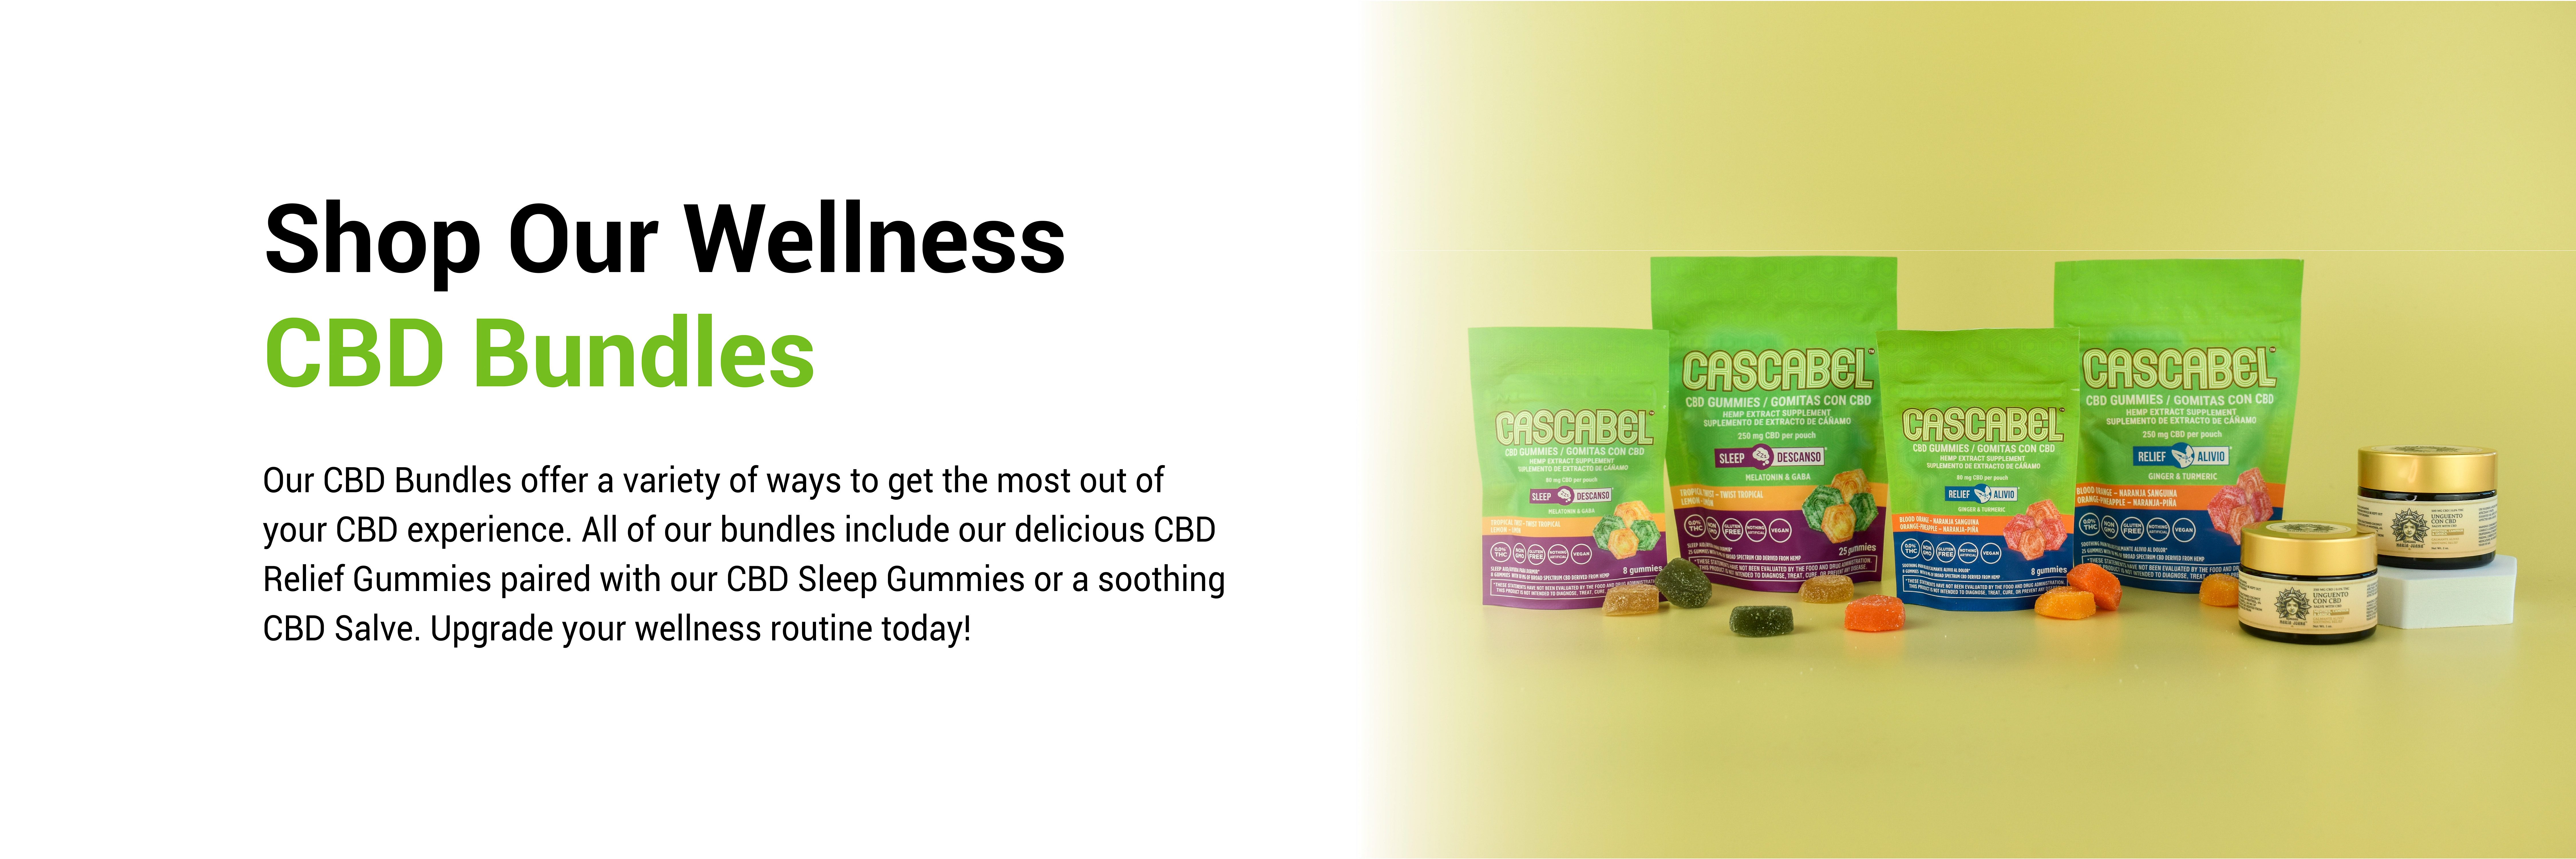 Shop Our Wellness CBD Bundles Products